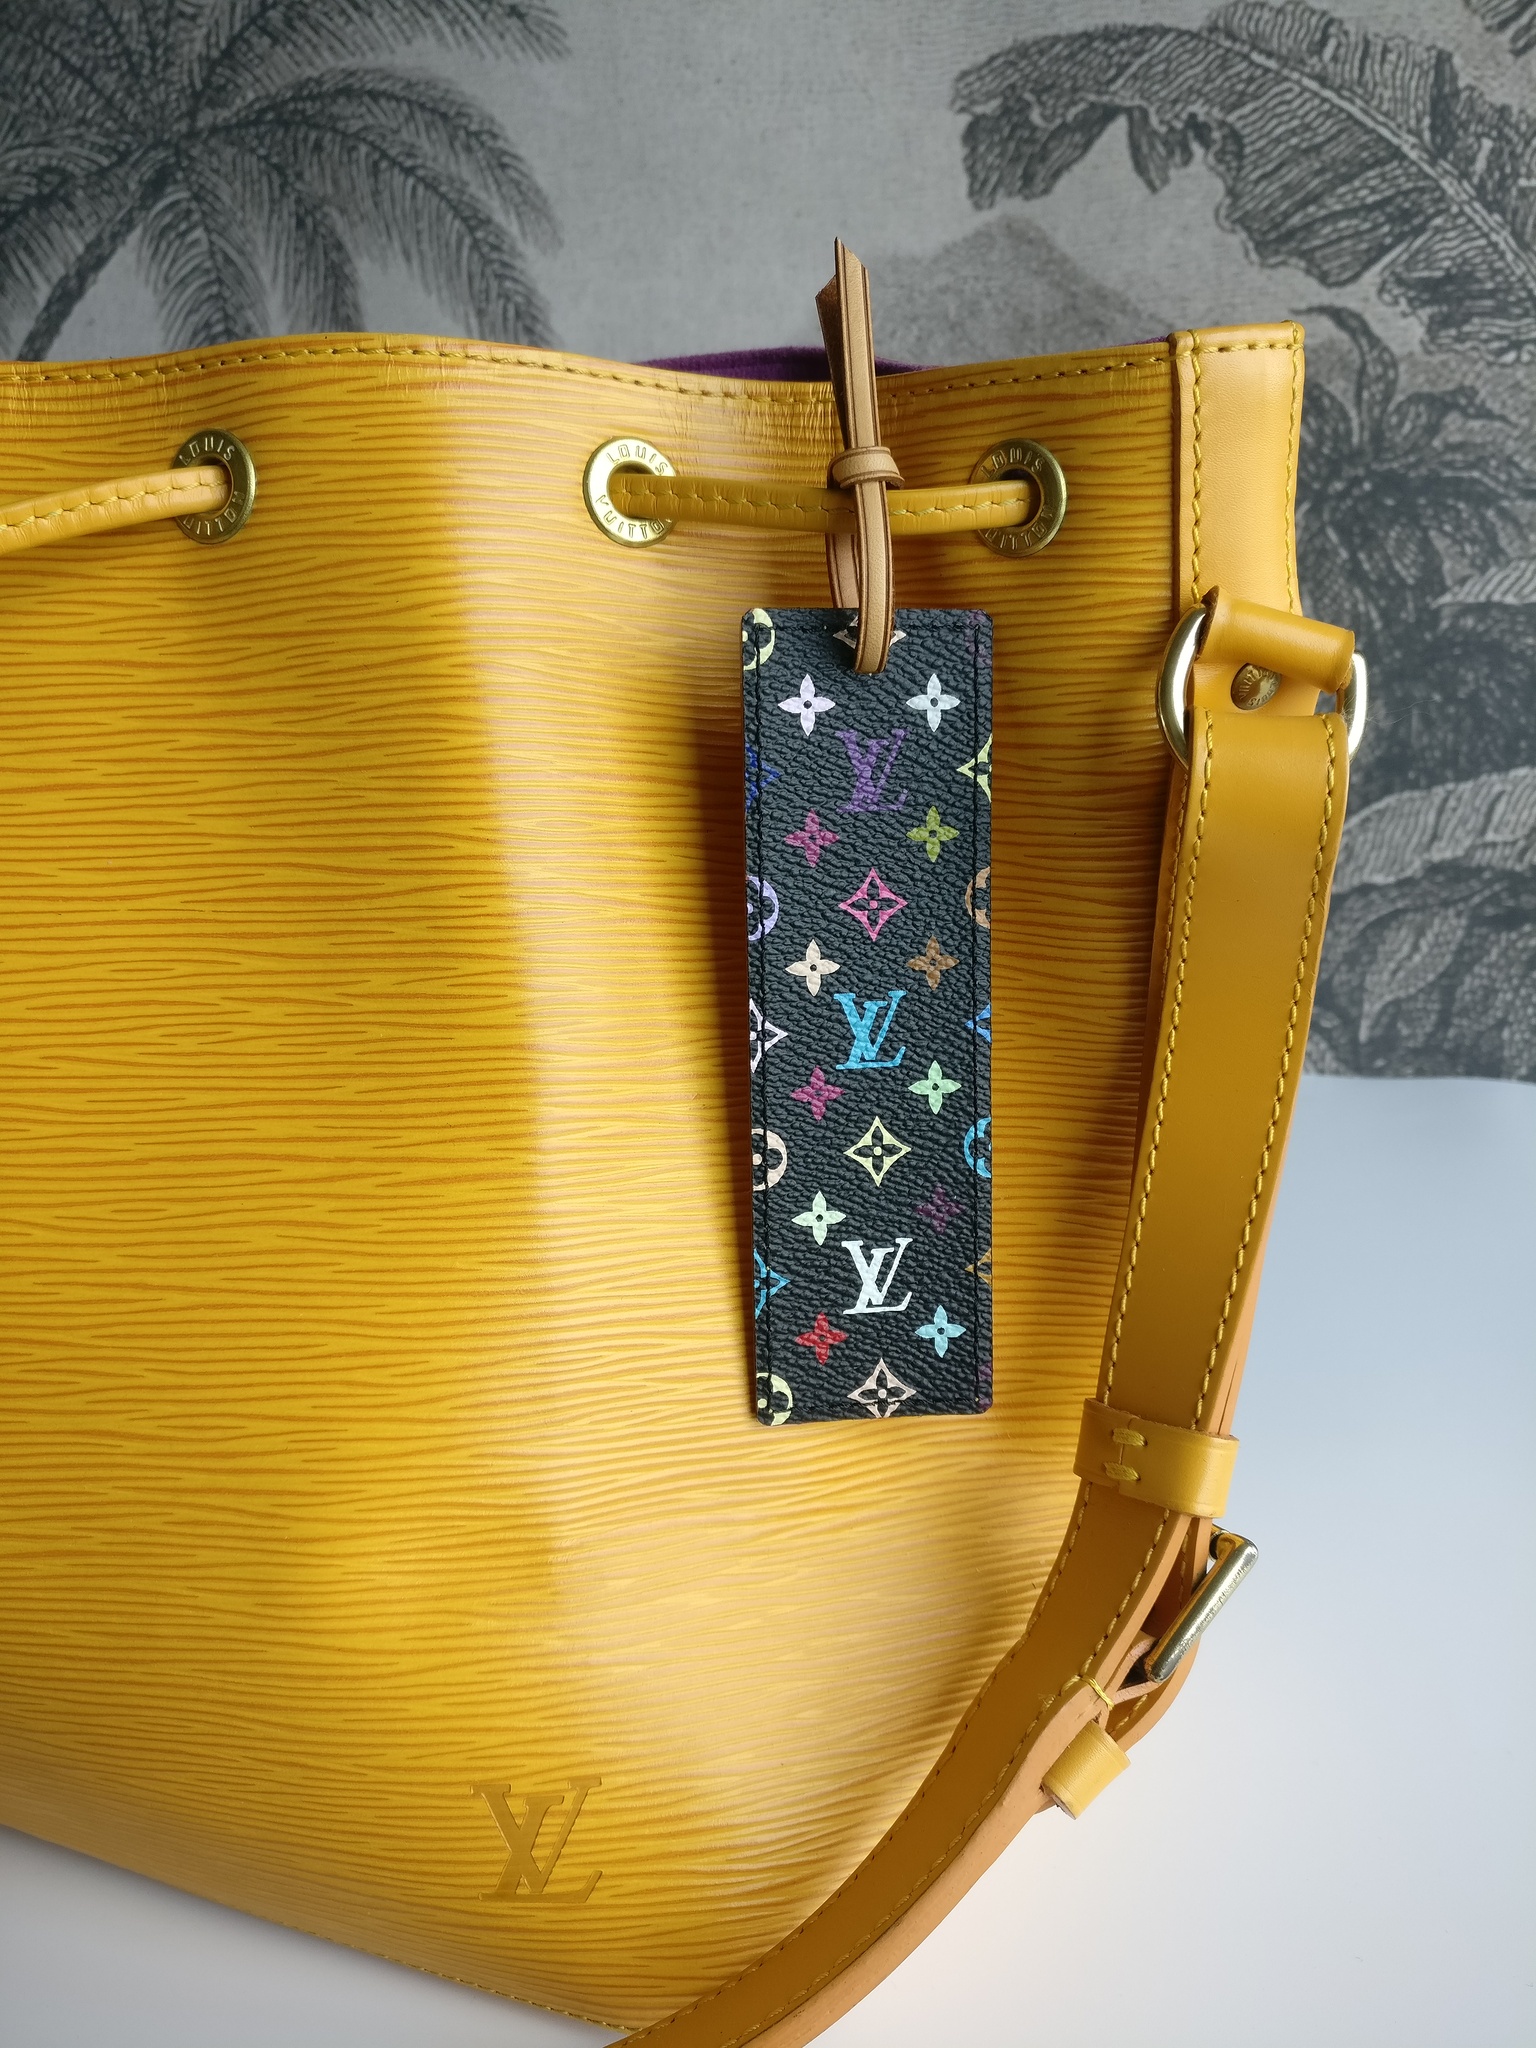 Louis Vuitton multicolore bookmark / bag charm